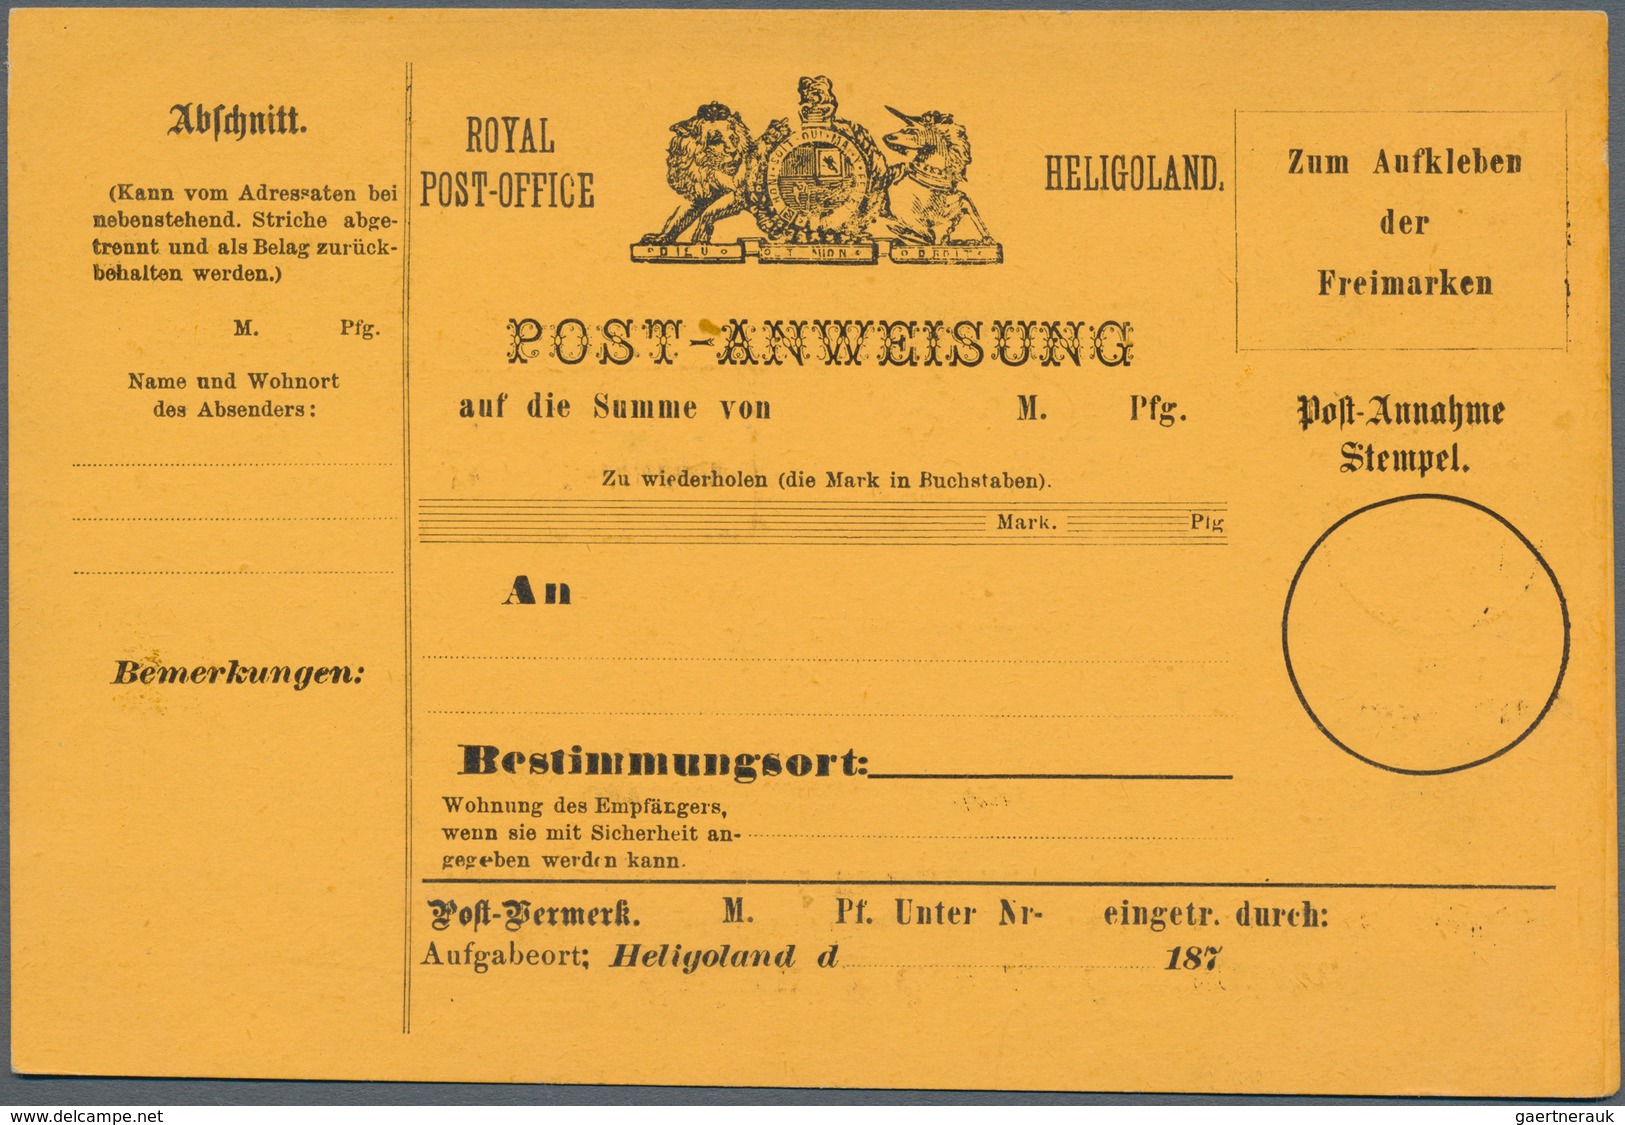 Helgoland - Besonderheiten: 1875/1878, 12 verschiedene POSTANWEISUNGS-Formulare ungebraucht